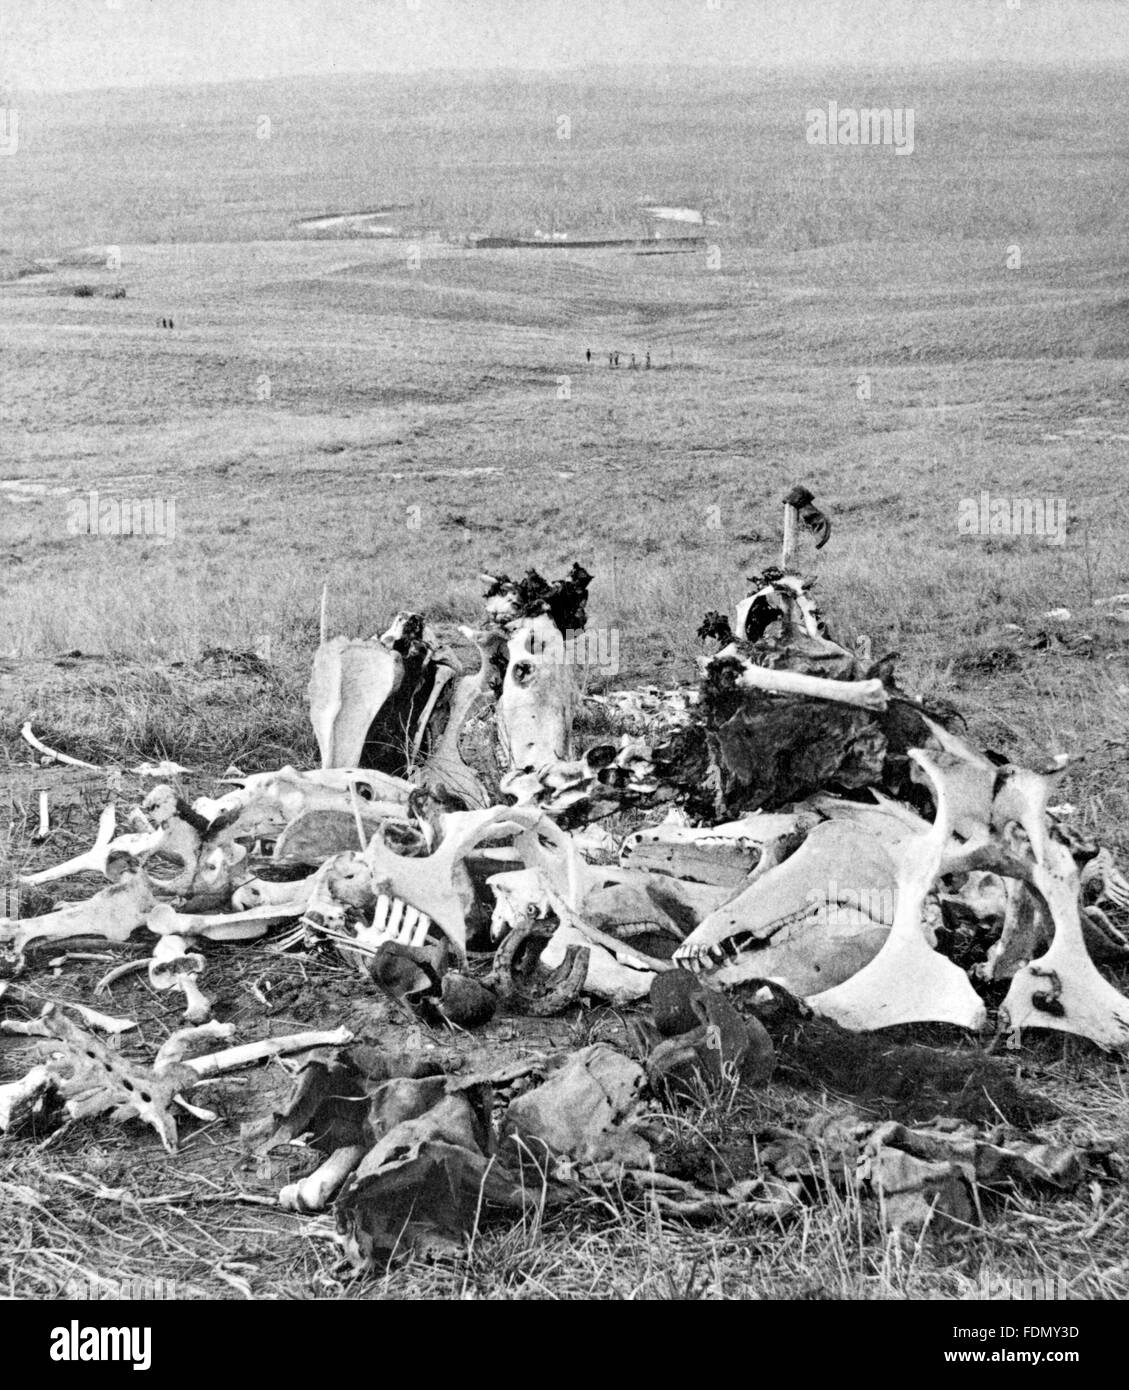 Haufen Knochen an der Stelle des George Armstrong Custer letzte Gefecht in der Schlacht von Little Bighorn, Montana, USA. Fotografiert und veröffentlicht von S.J. Morrow, c1876. Stockfoto